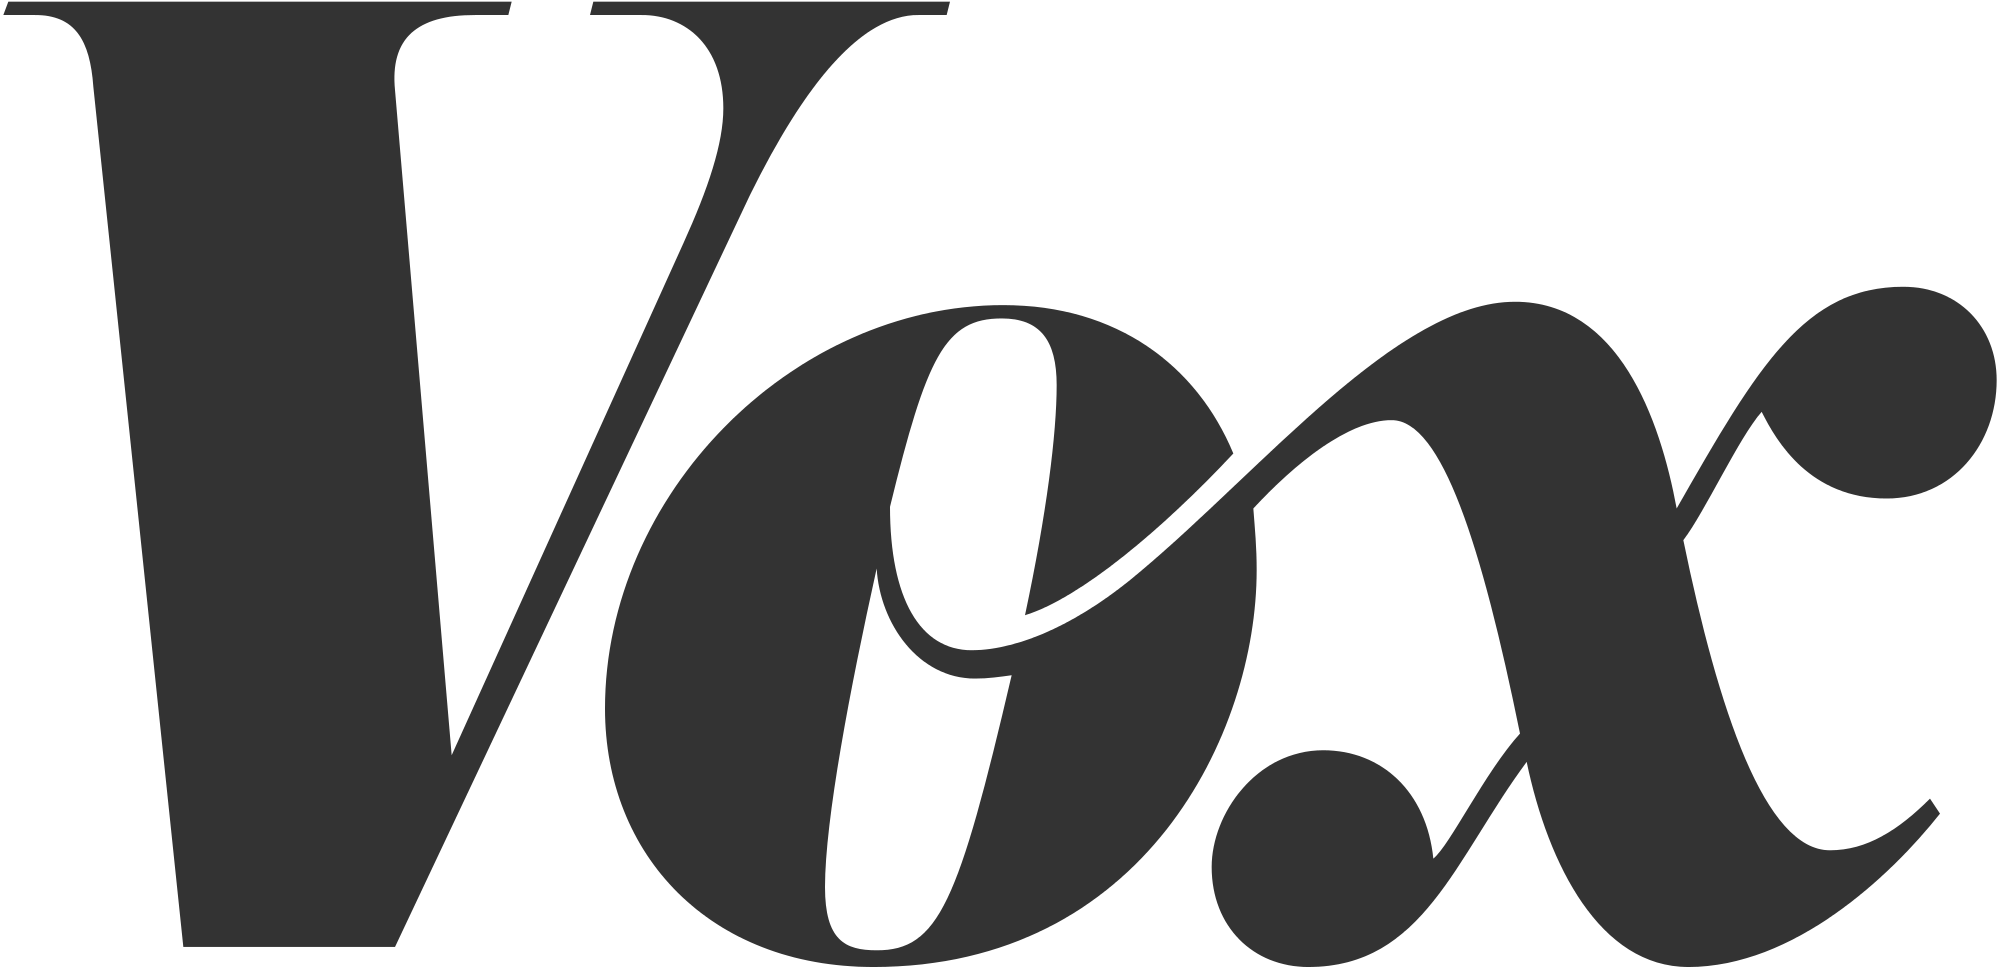 tipografia - Qual categoria de fonte é o logotipo da Vox? - Design gráfico ...